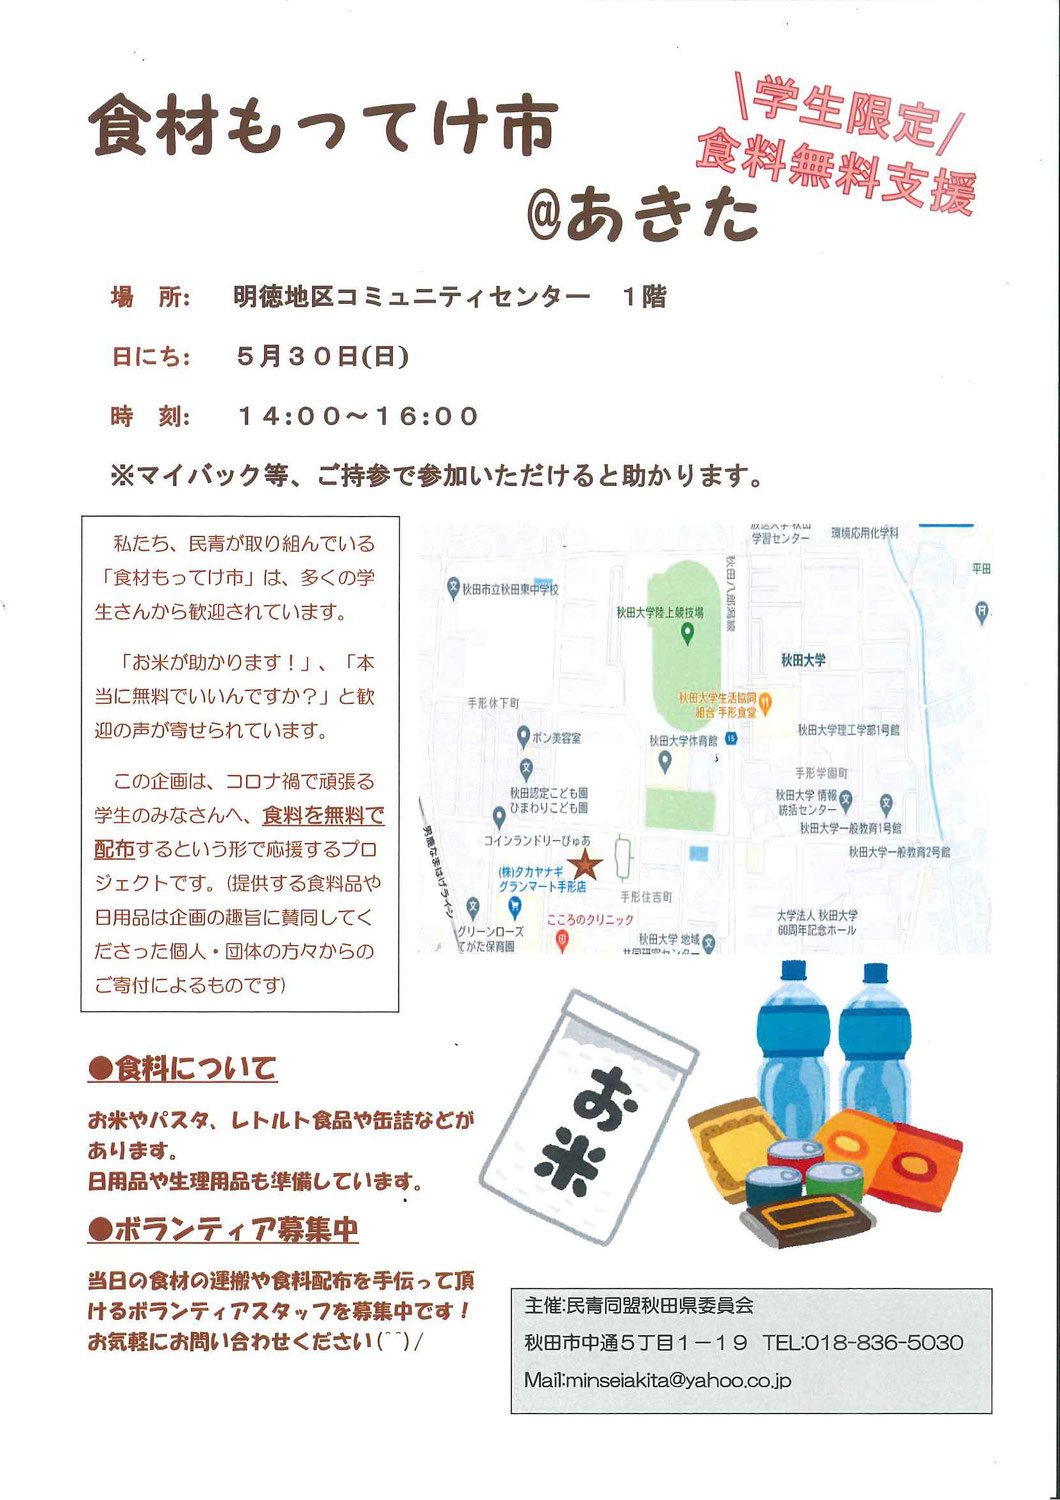 民青同盟秋田県委員会主催「食材もってけ市＠あきた」開催のお知らせ